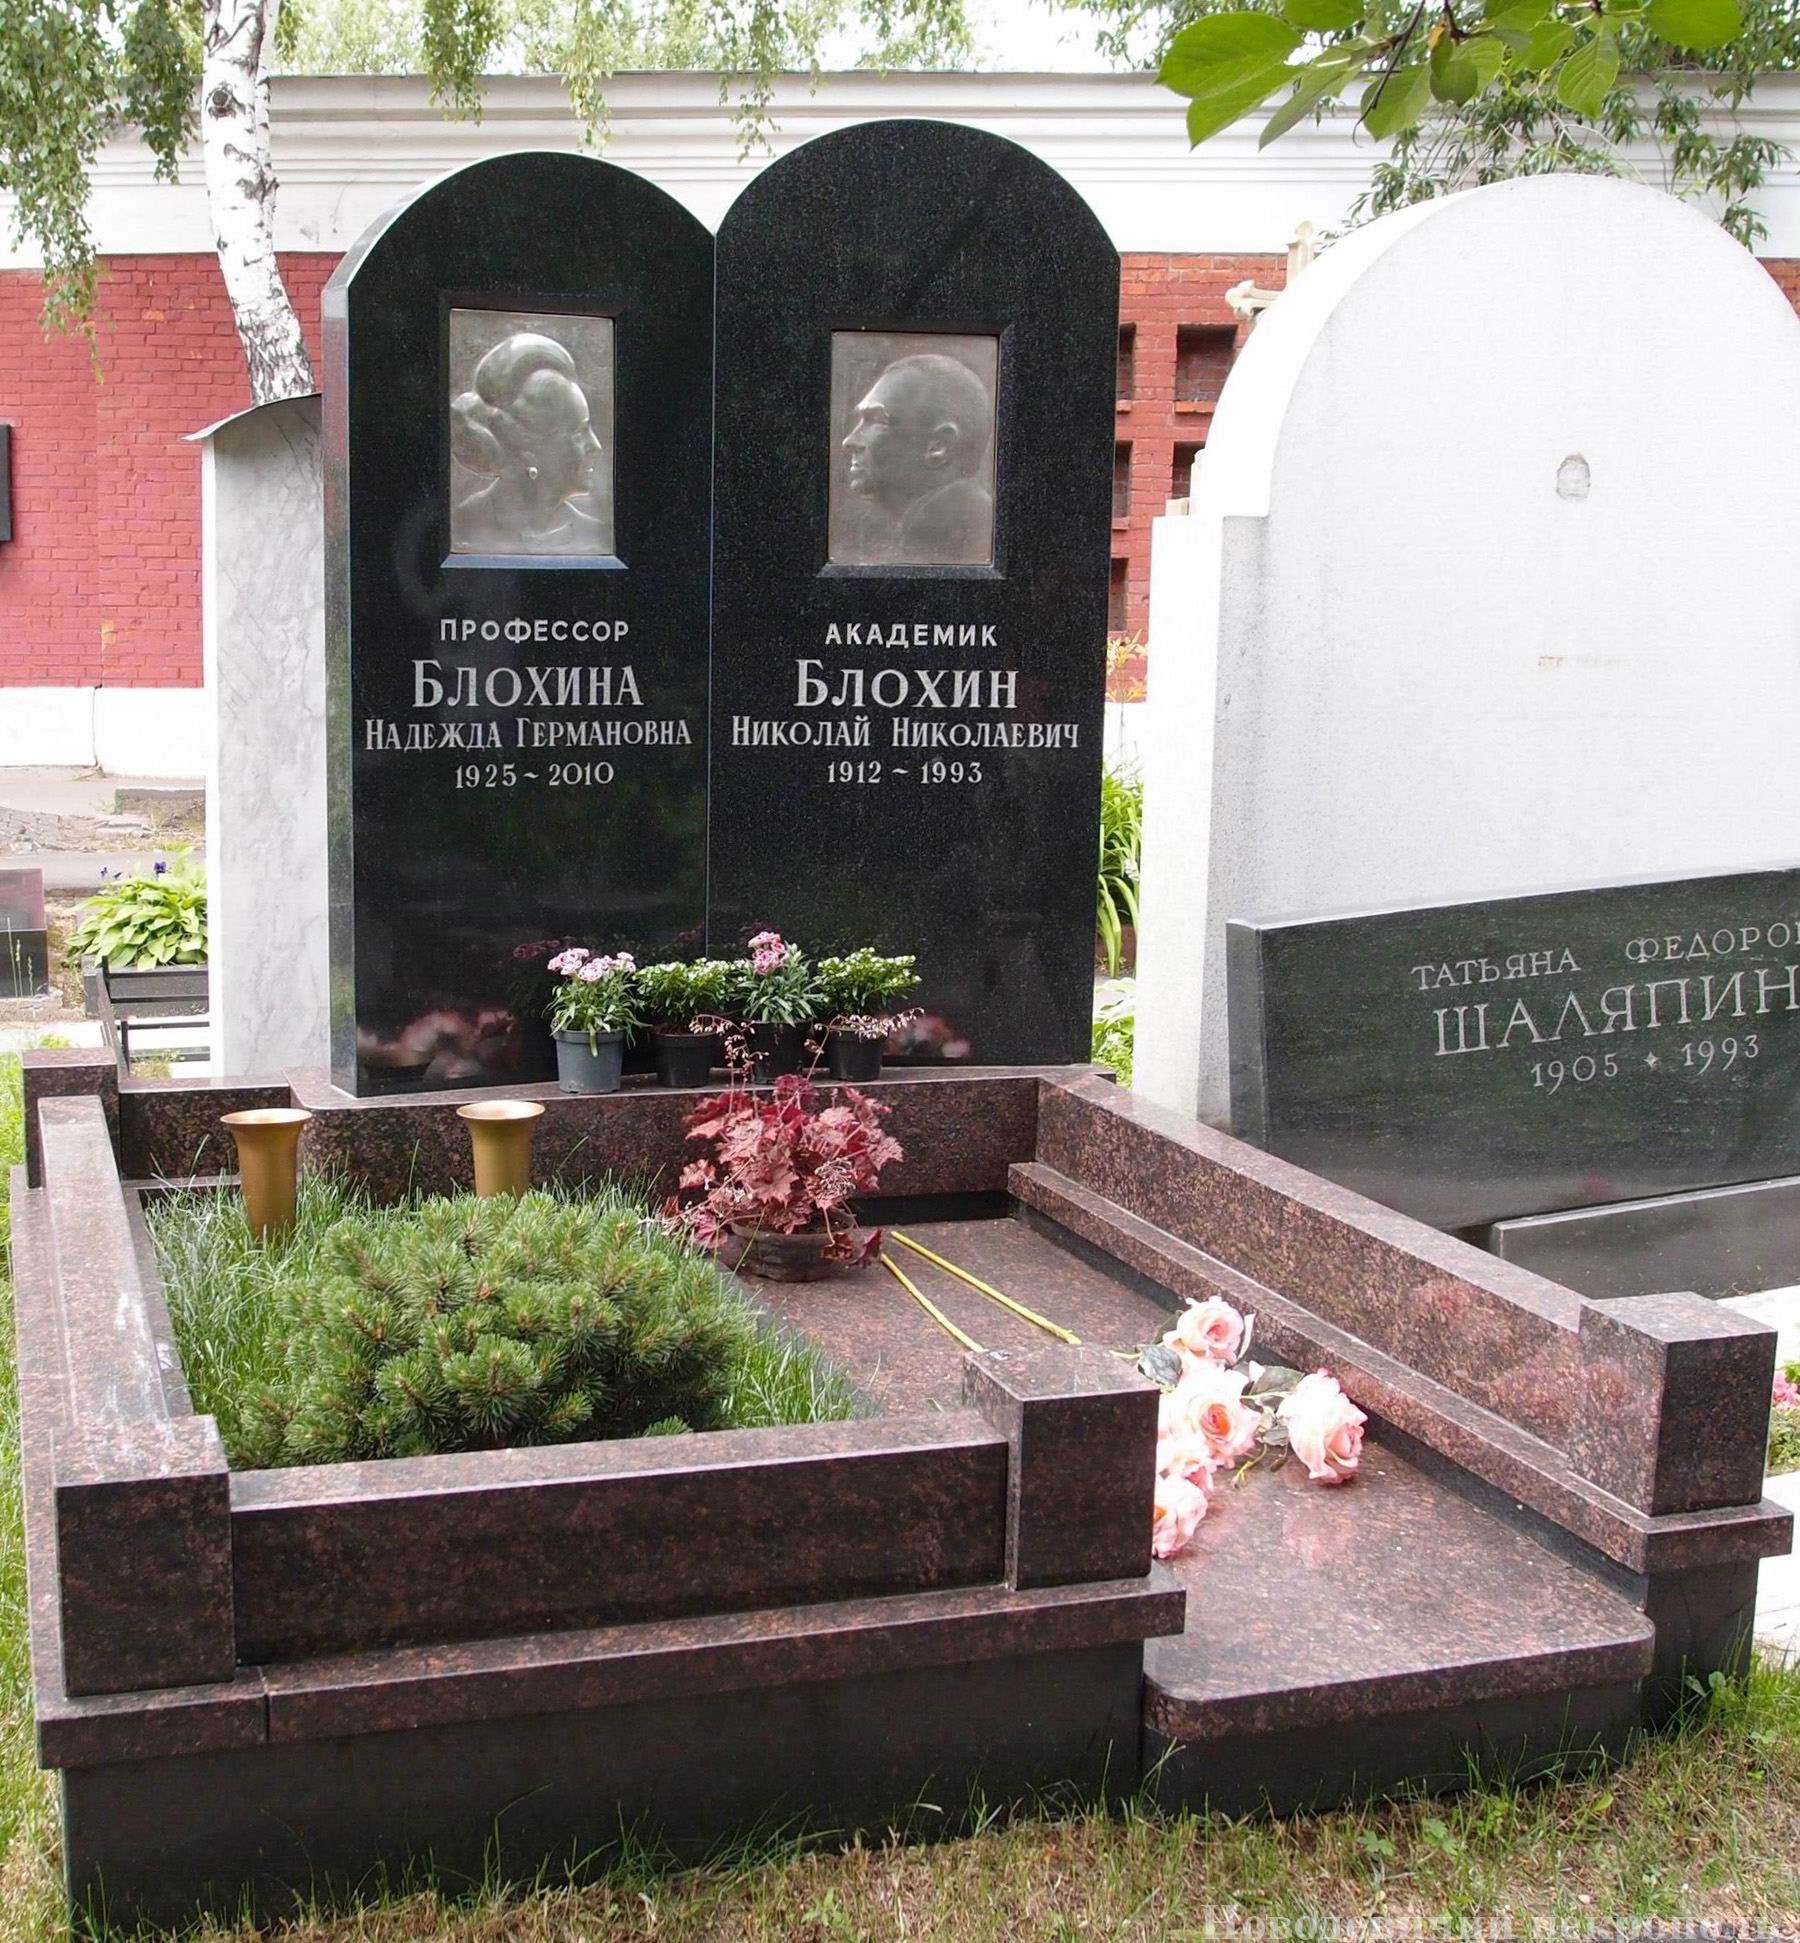 Памятник на могиле Блохину Н.Н. (1912-1993), на Новодевичьем кладбище (10-7-10). Нажмите левую кнопку мыши чтобы увидеть предыдущий вариант до 2010.